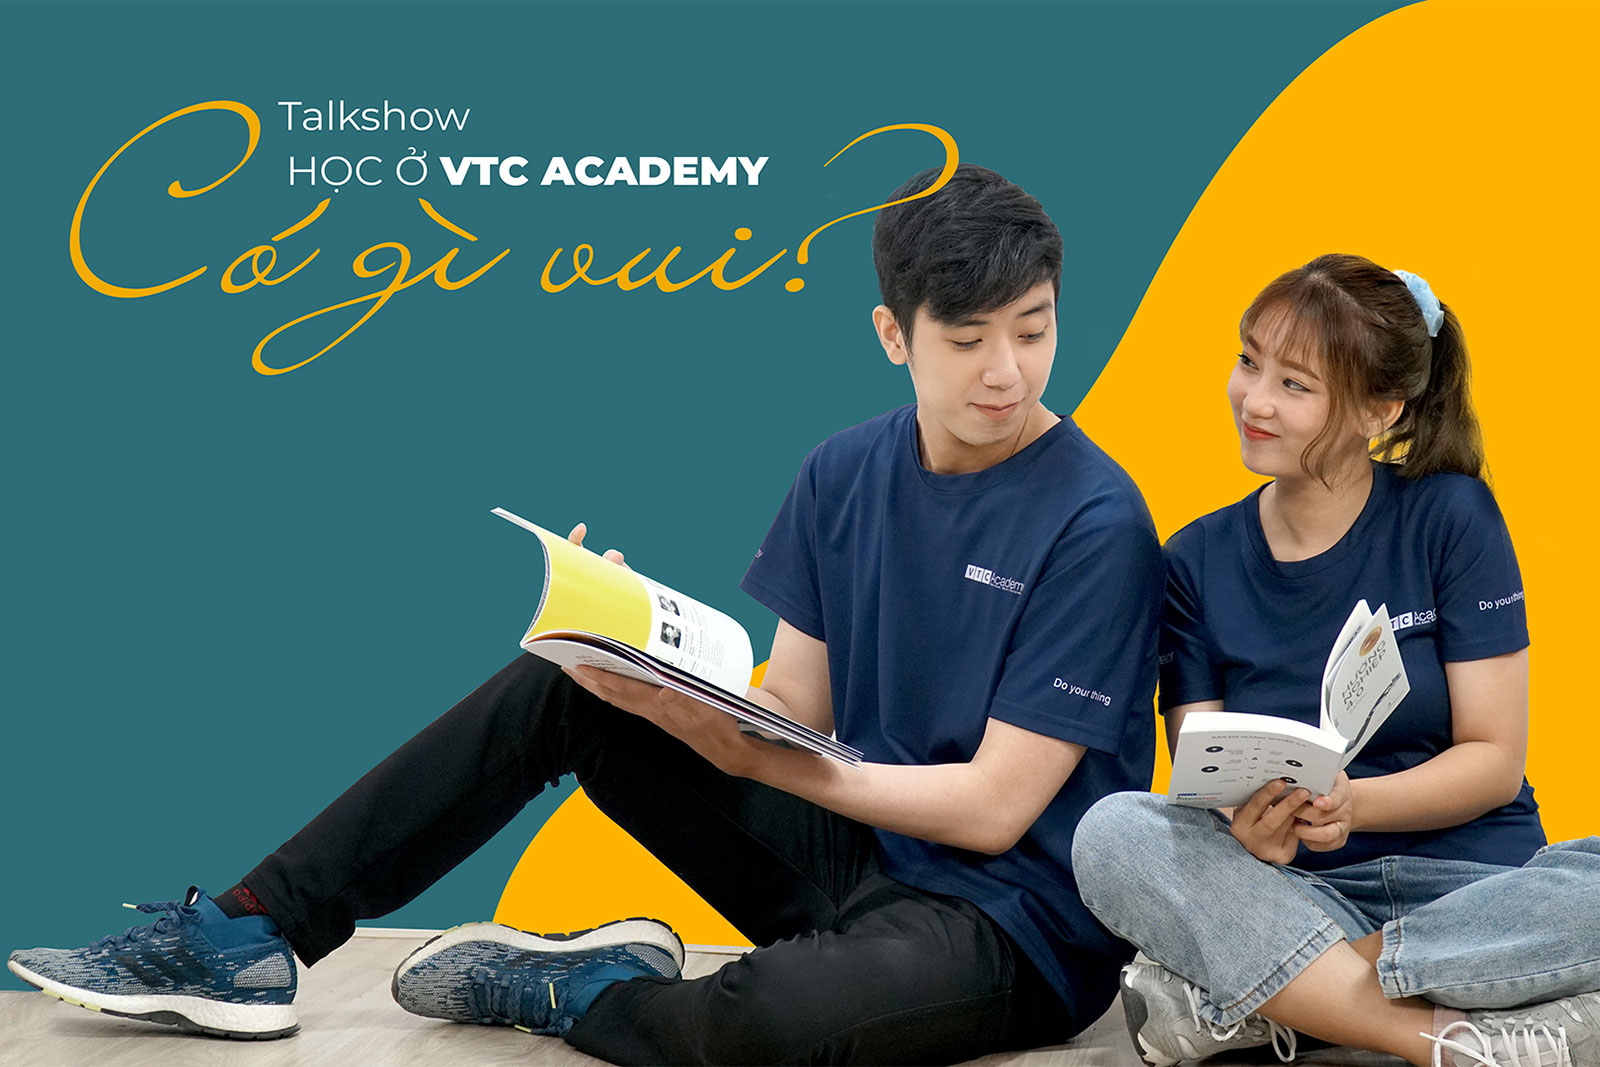 Trò chuyện với học viên tại talkshow “Học ở VTC Academy có gì vui?”